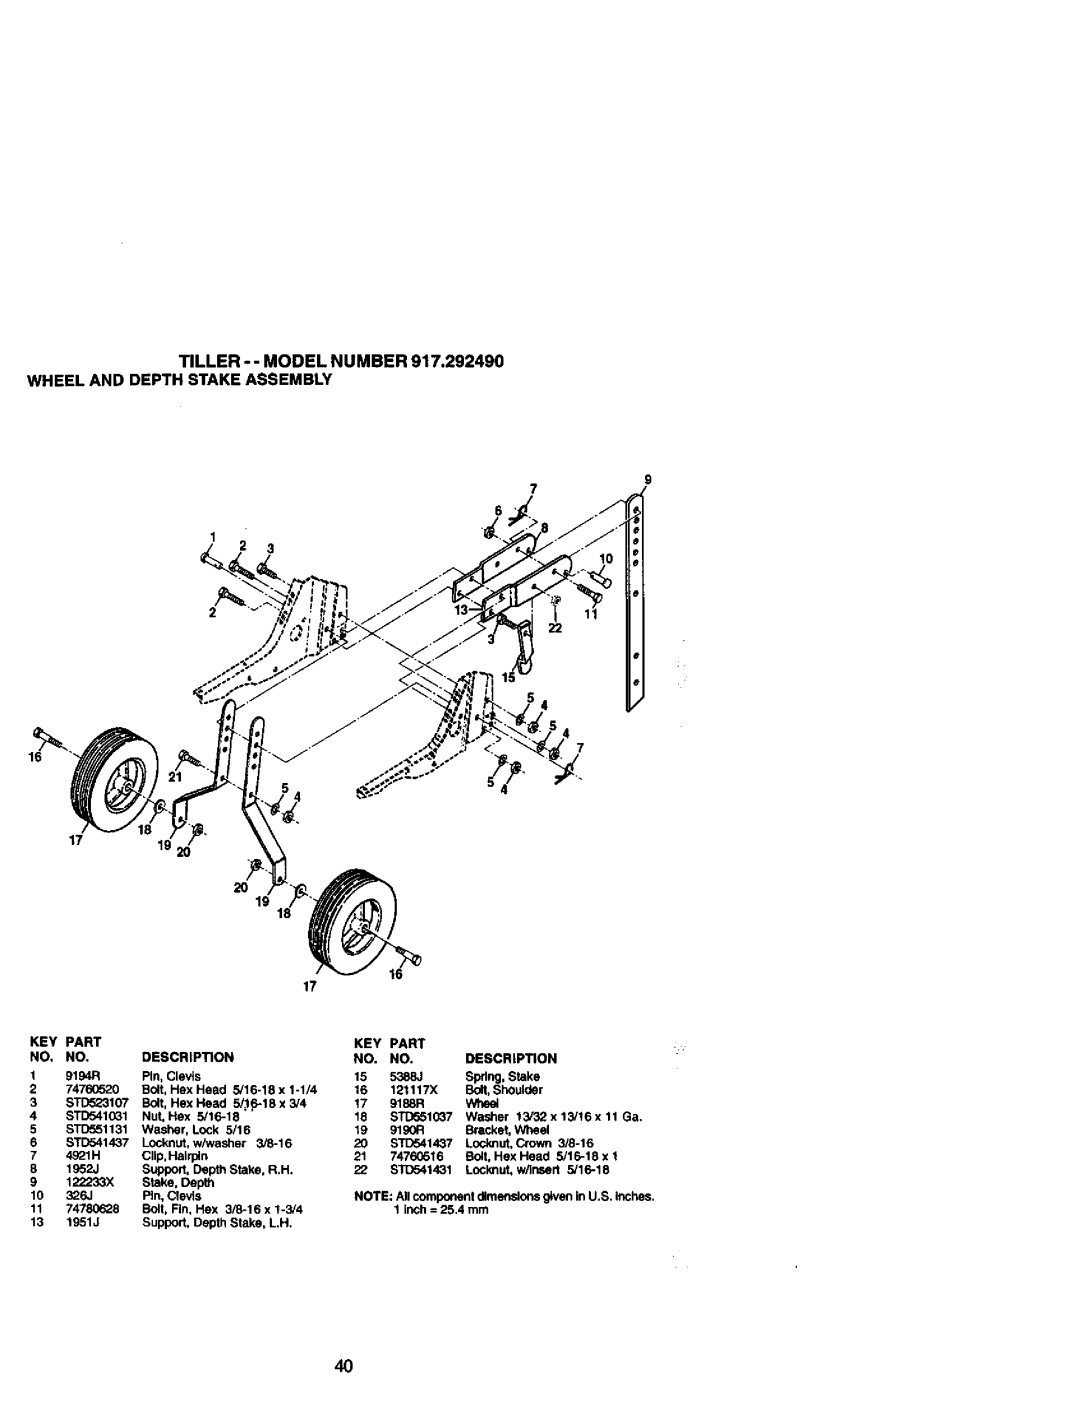 Craftsman 917.29249 owner manual Tiller - - Model Number, Wheel And Depth Stake Assembly, 17 19 2O, Inch= 25.4 mm 